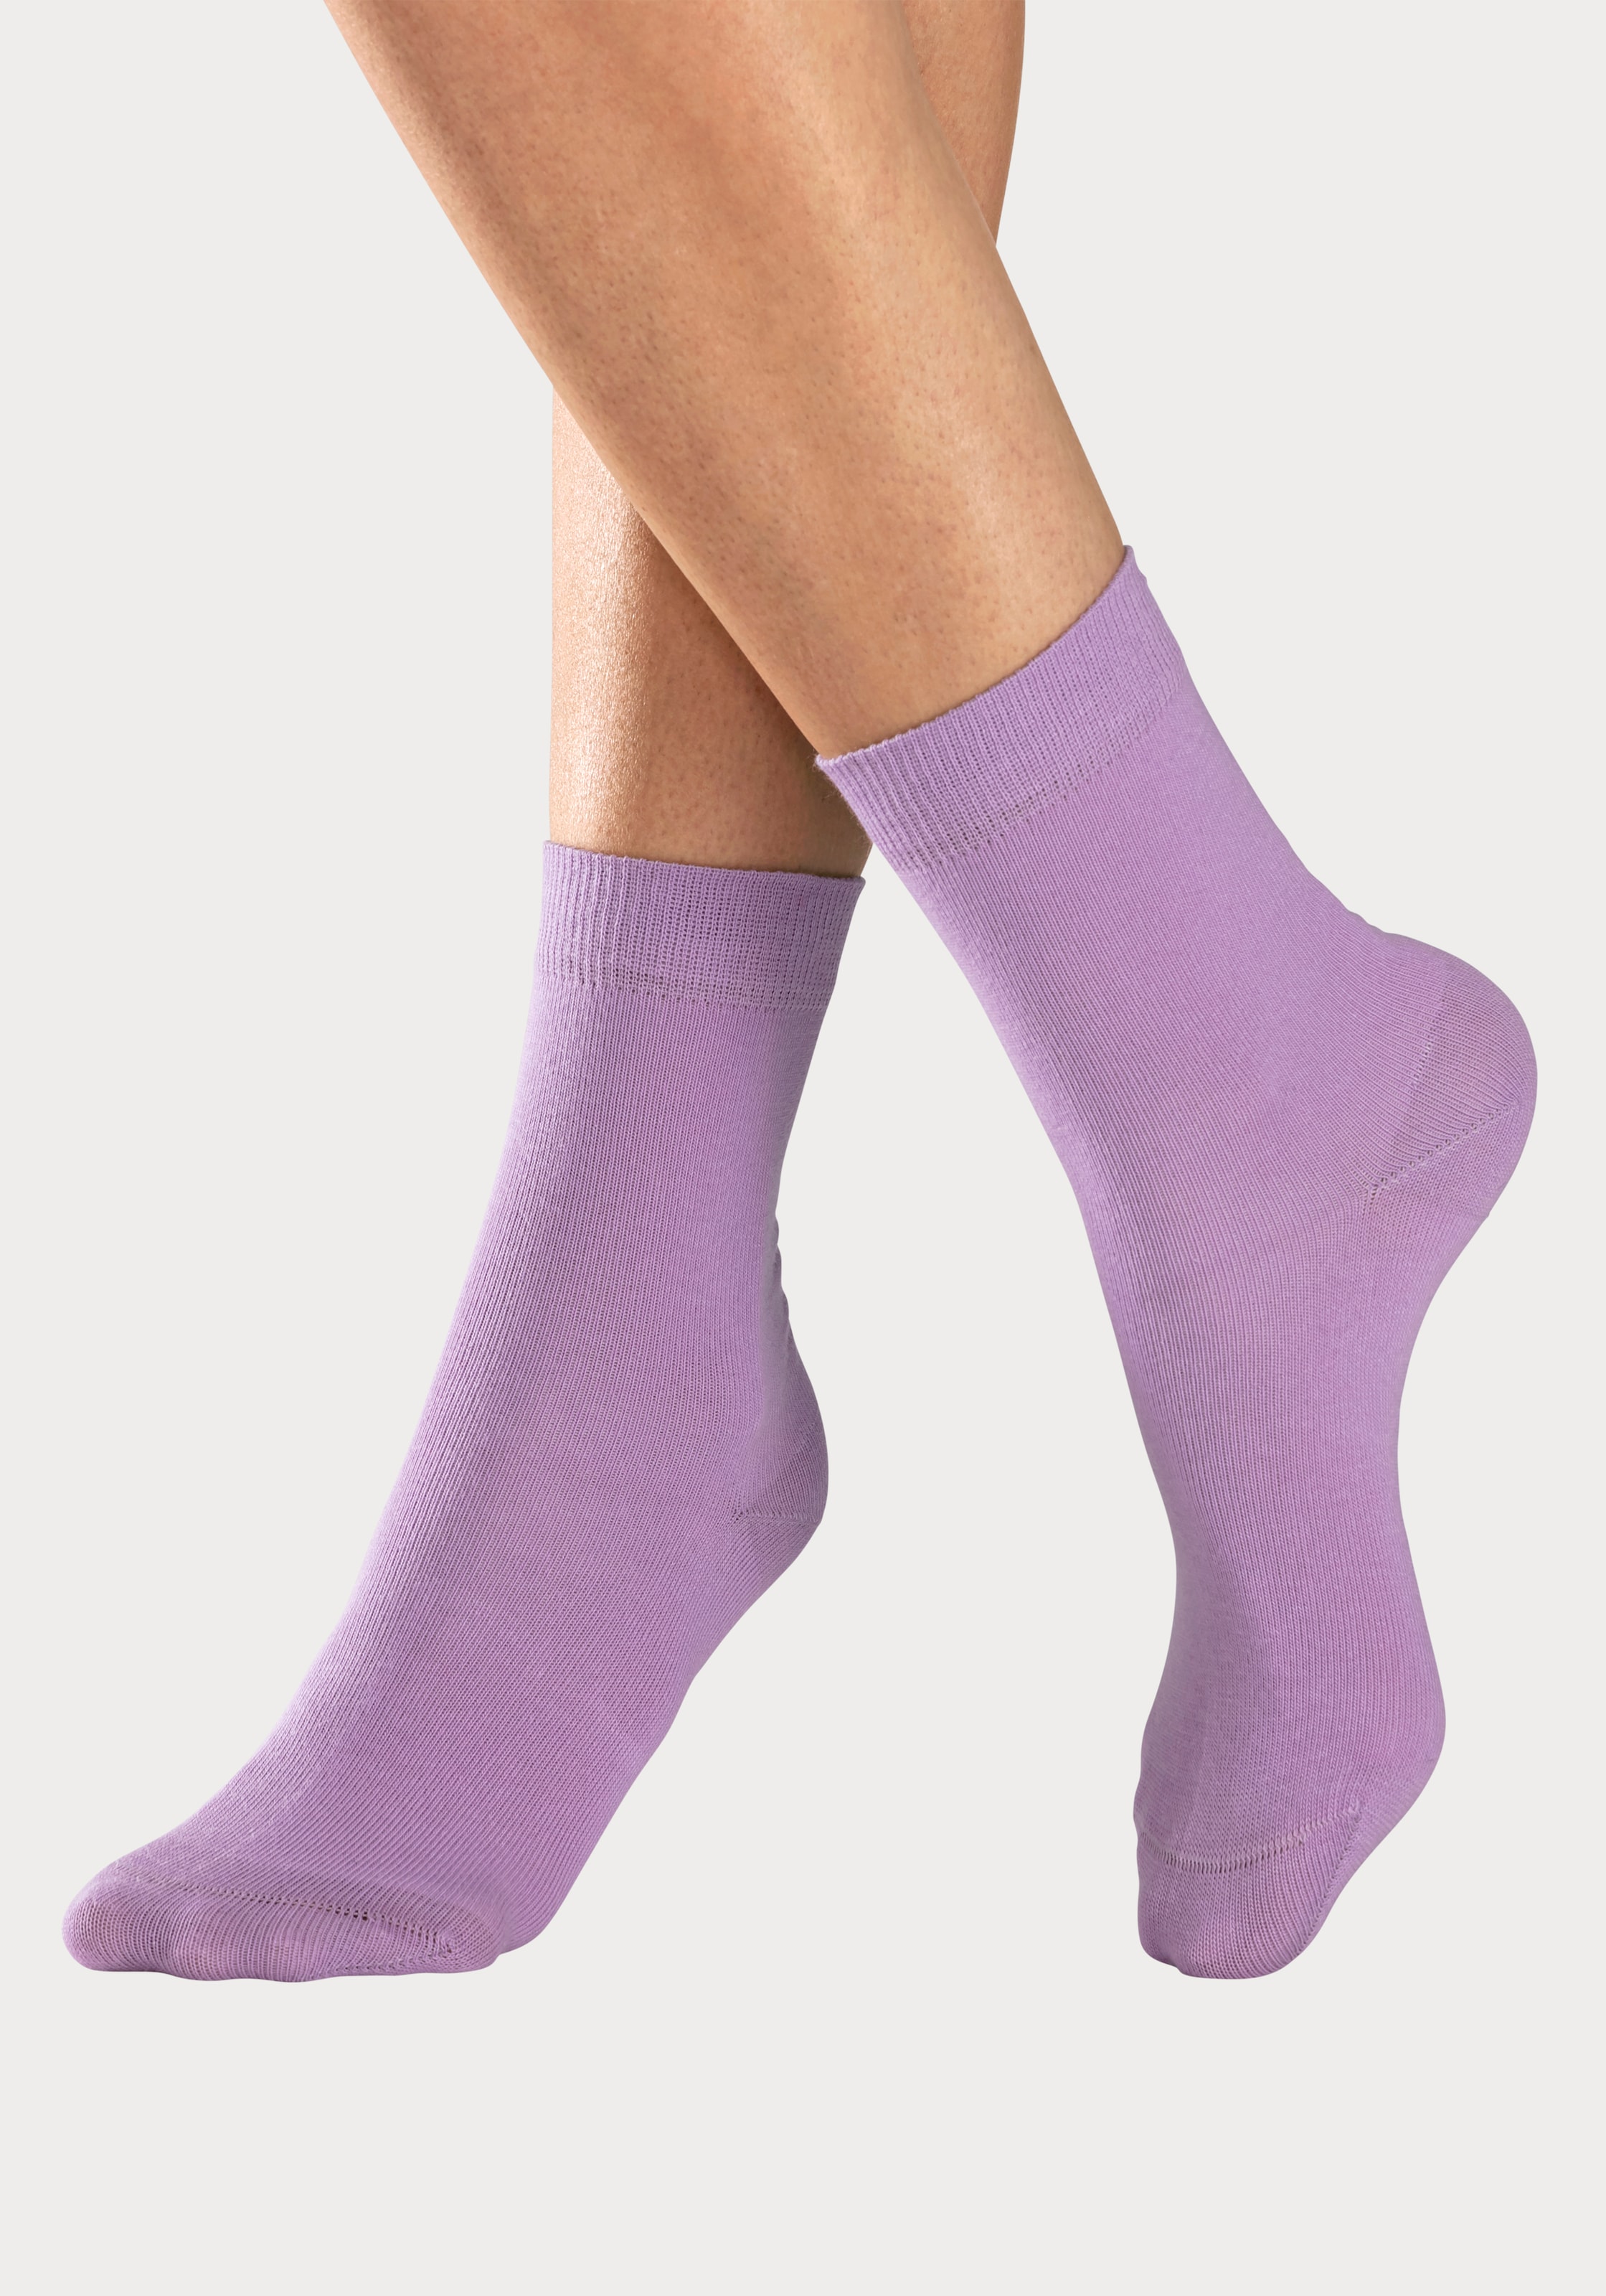 OTTO in Socken, Farbzusammenstellungen bestellen Online Shop H.I.S (Set, im unterschiedlichen Paar), 4